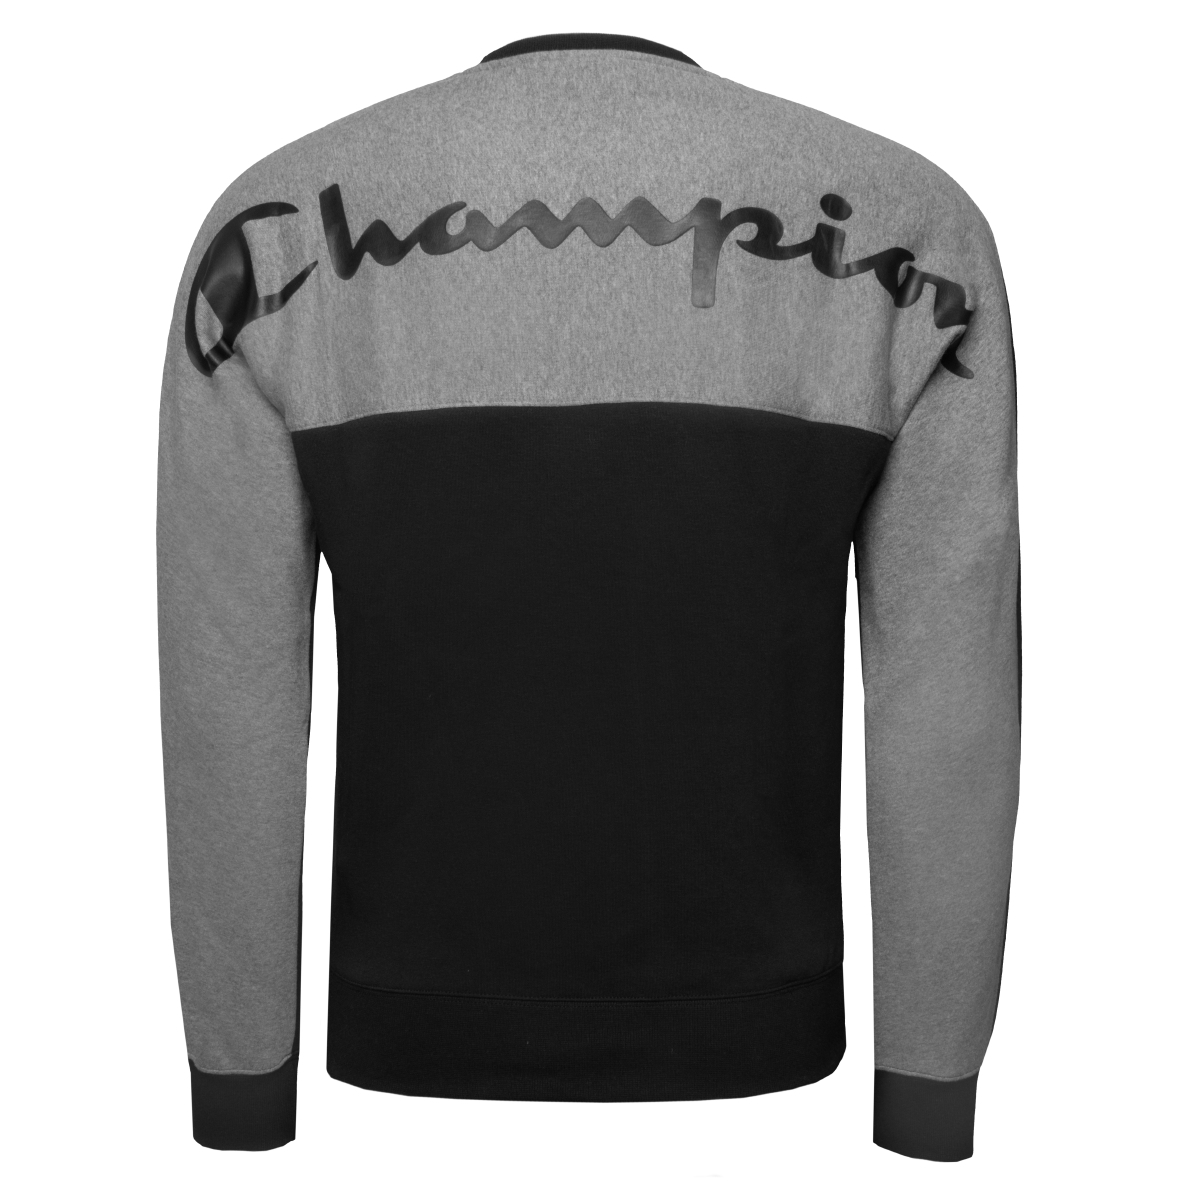 Champion Crewneck Sweatshirt schwarz